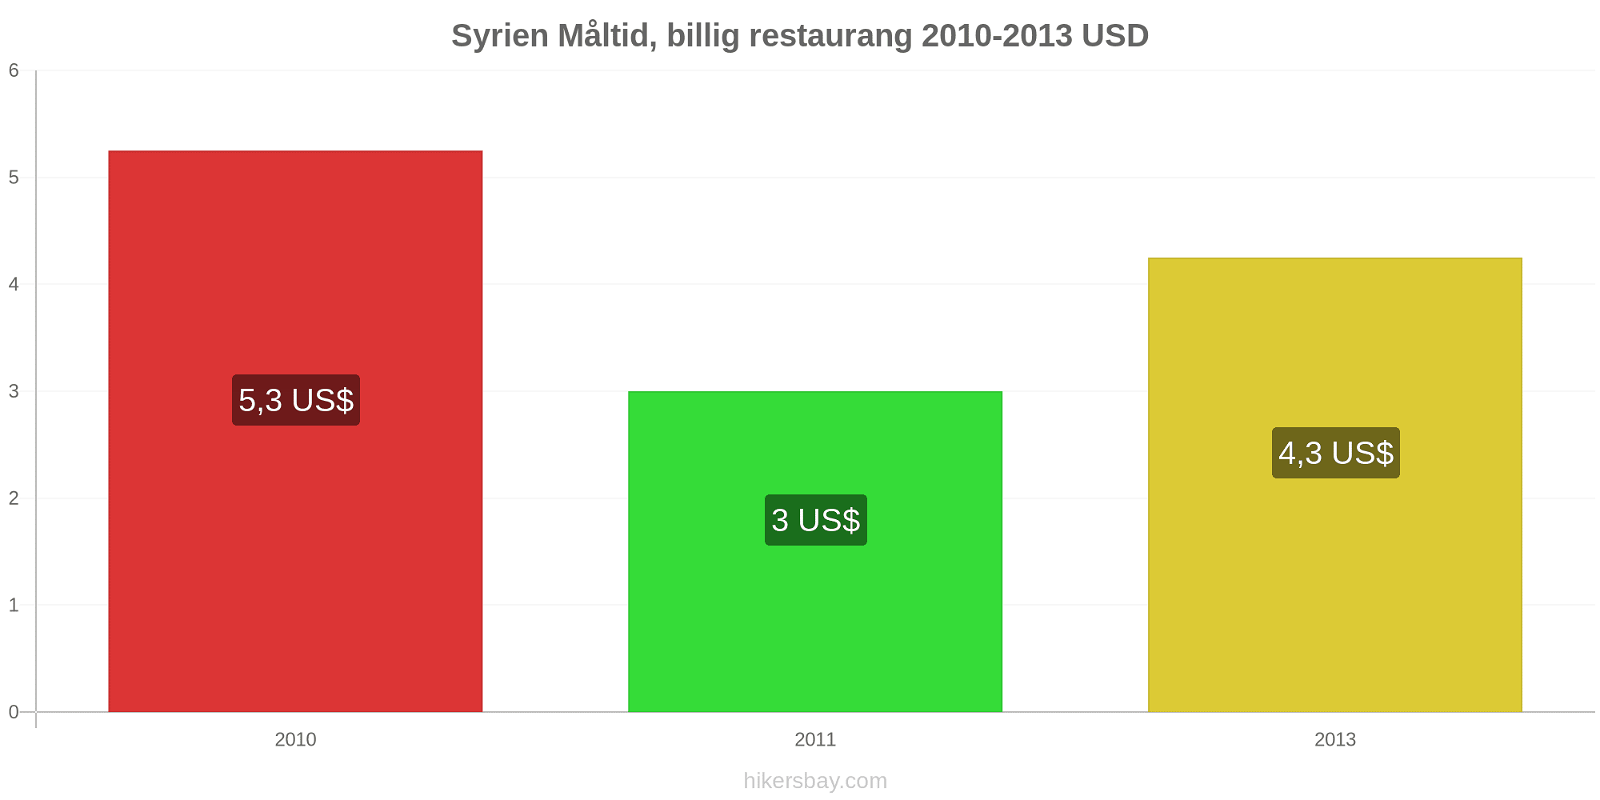 Syrien prisändringar Måltid i en billig restaurang hikersbay.com